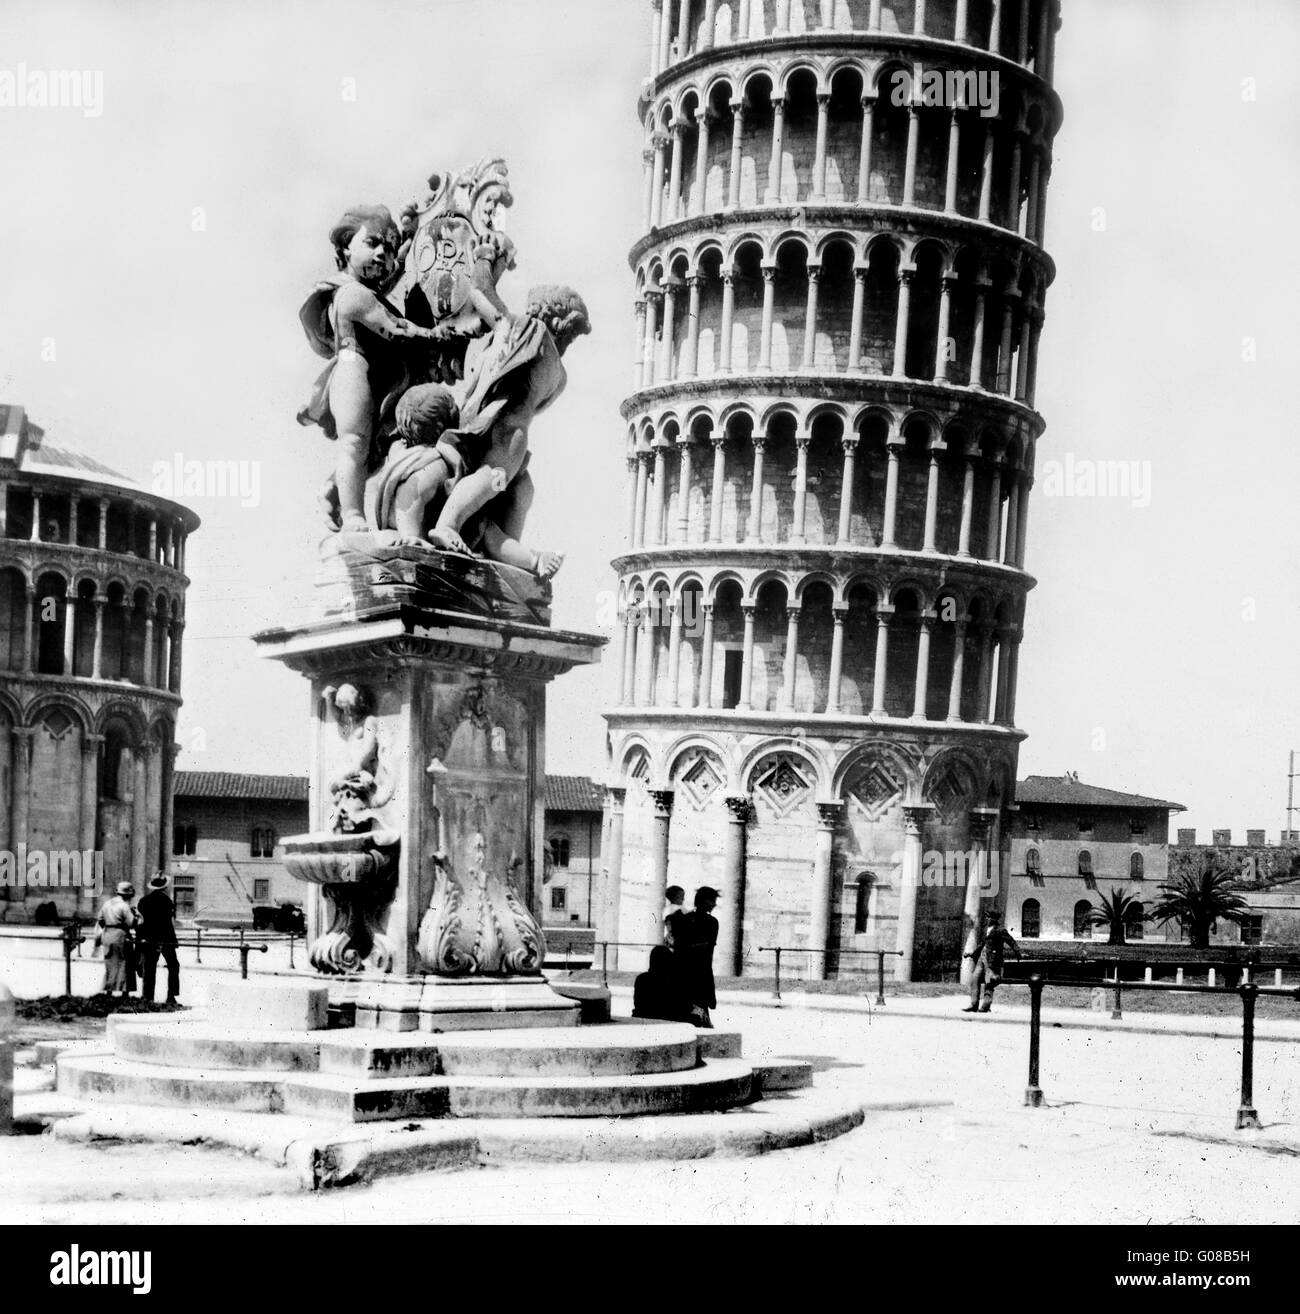 Pisa Italia 1927 Fontana barocca dei Putti con Torre Pendente in background, Piazza dei Miracoli di Pisa, Italia. Foto Stock